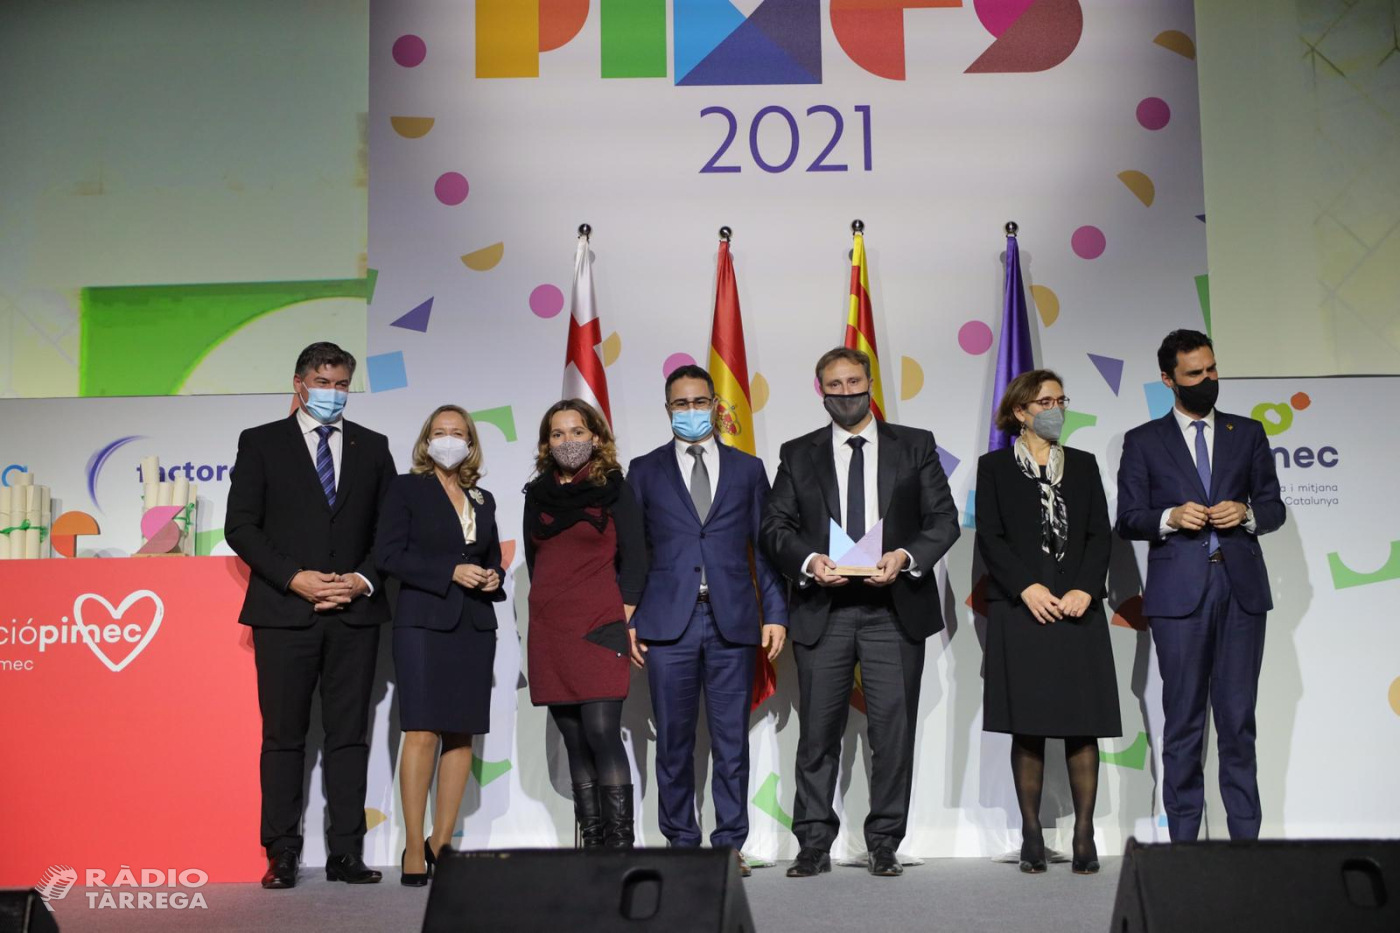 L'Associació ViuGuimerà guanya un dels cinc premis PIMEC 2021 a la reconstrucció econòmica